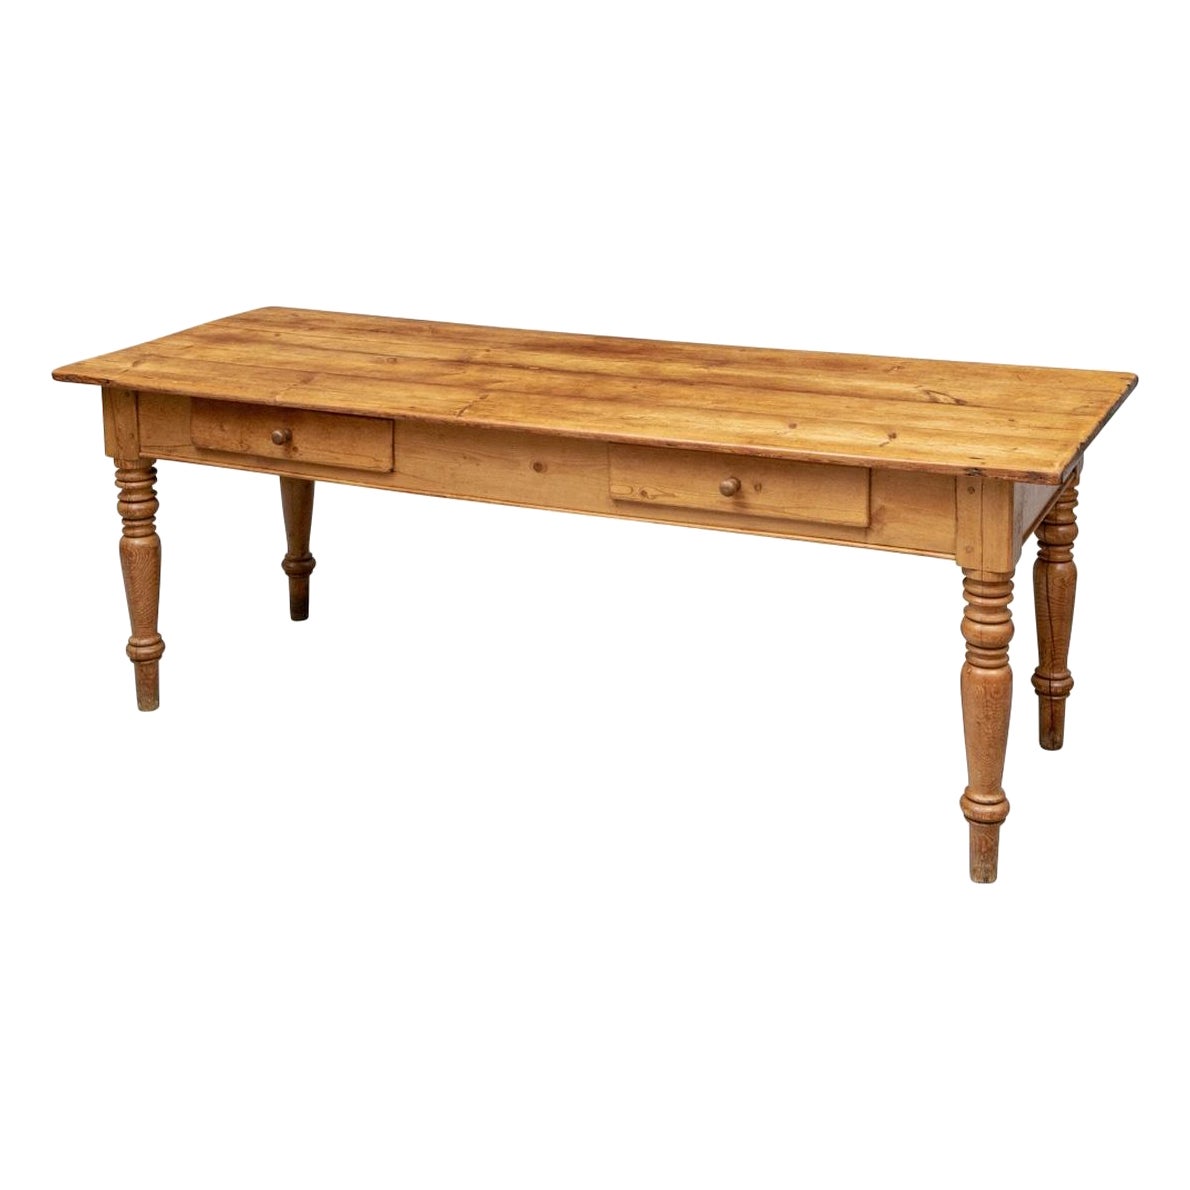 Exceptional Antique Pine Farm Table